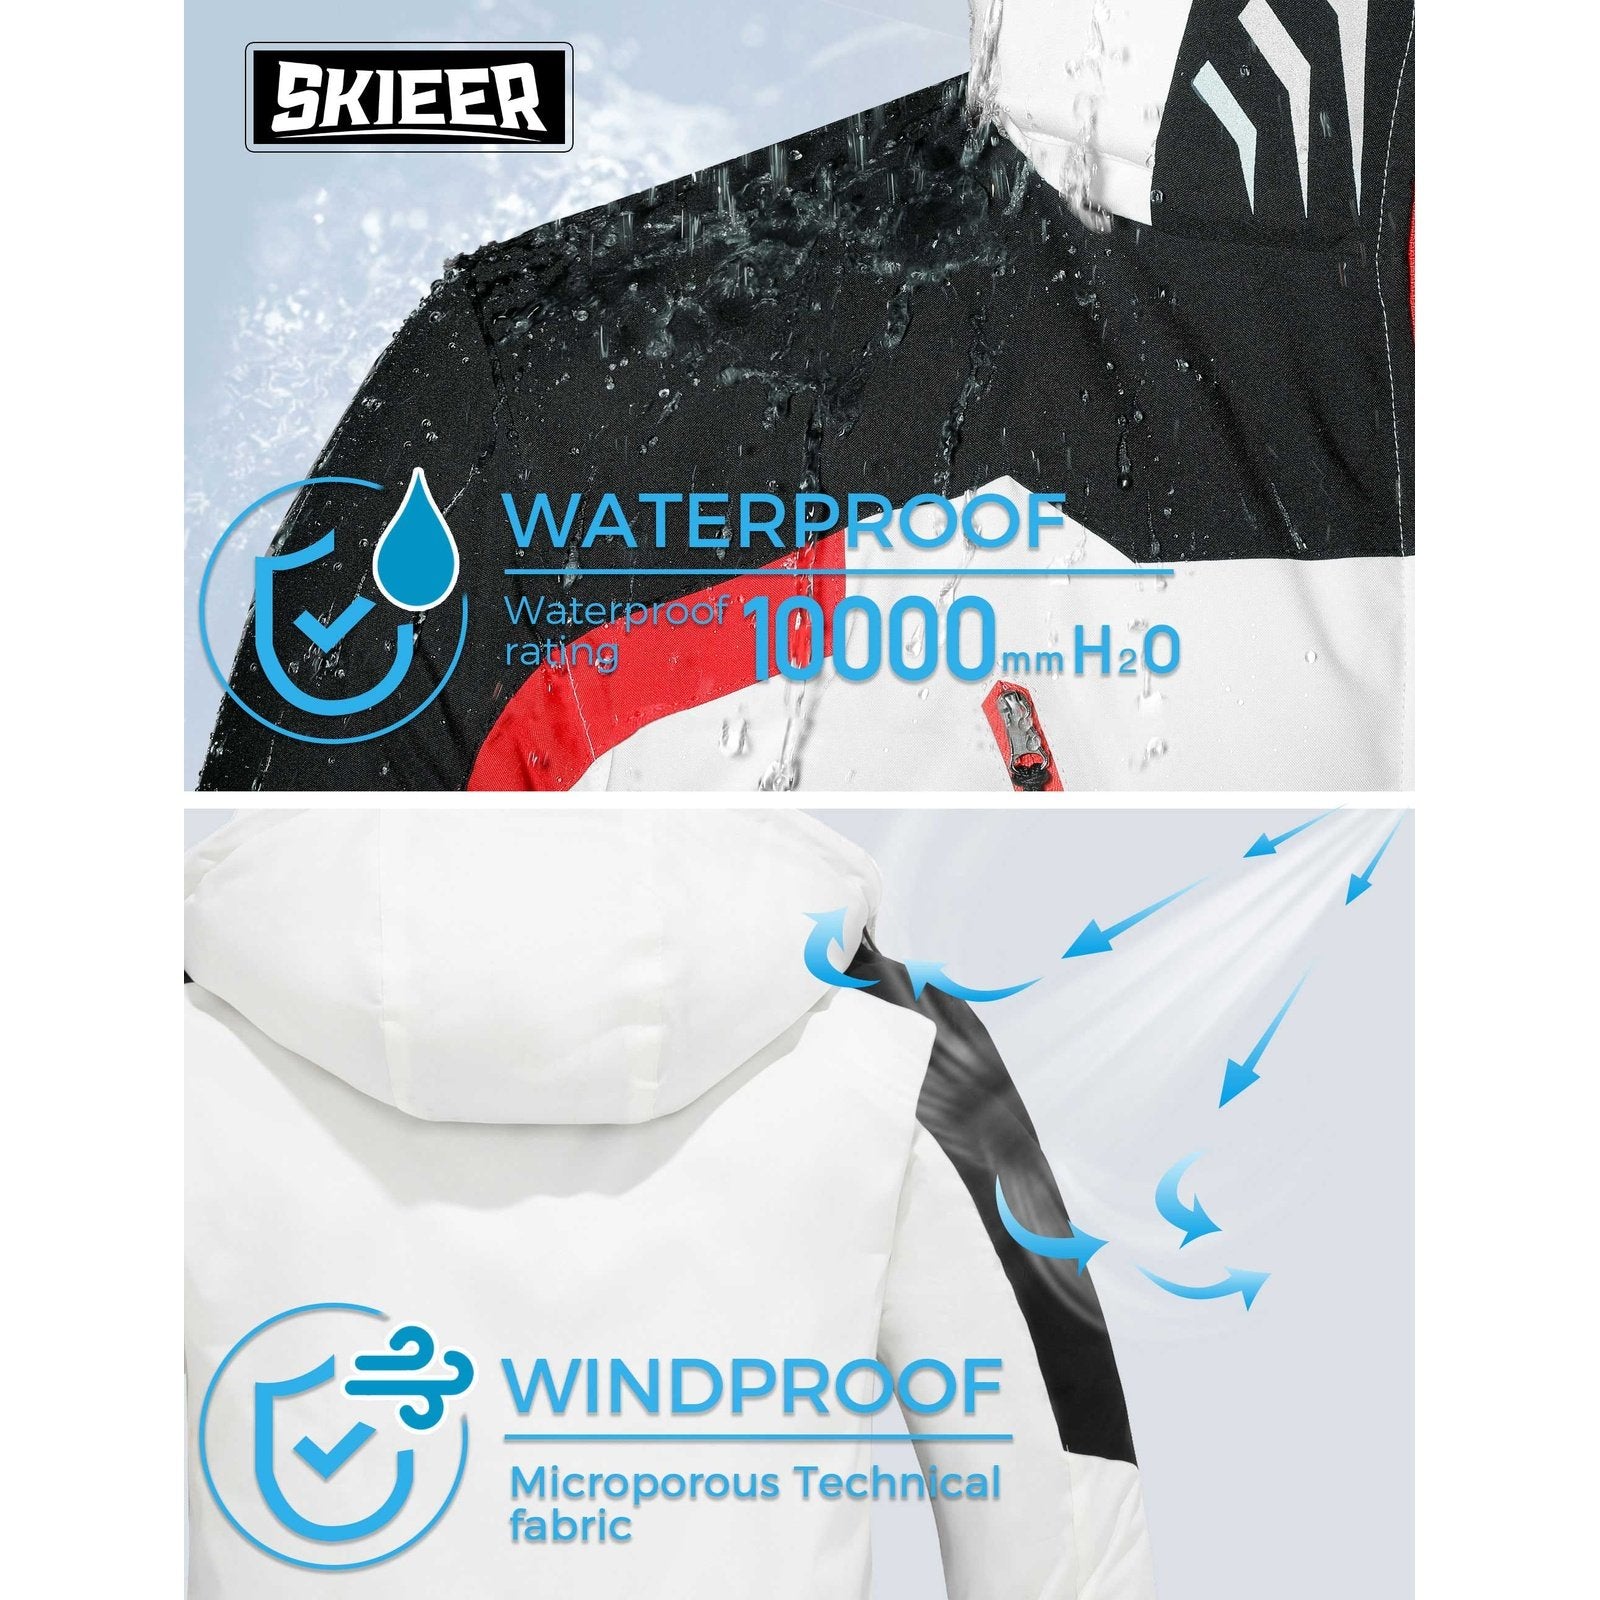 Skieer Men's Ski Jacket Waterproof Rain Jacket Wind Resistant